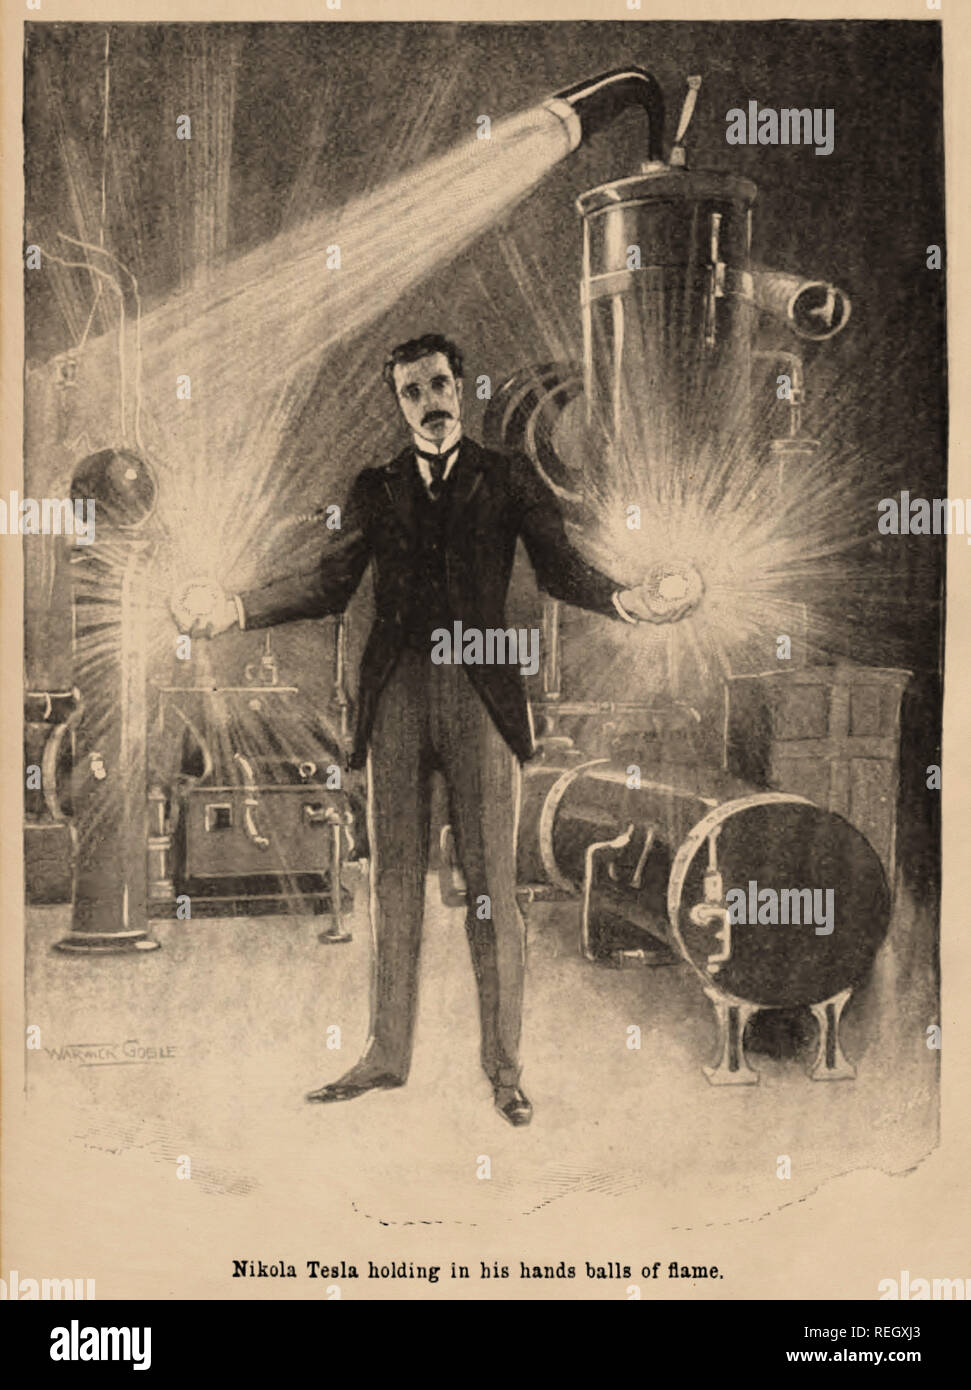 Nikola Tesla holding Balls of Flame Stock Photo